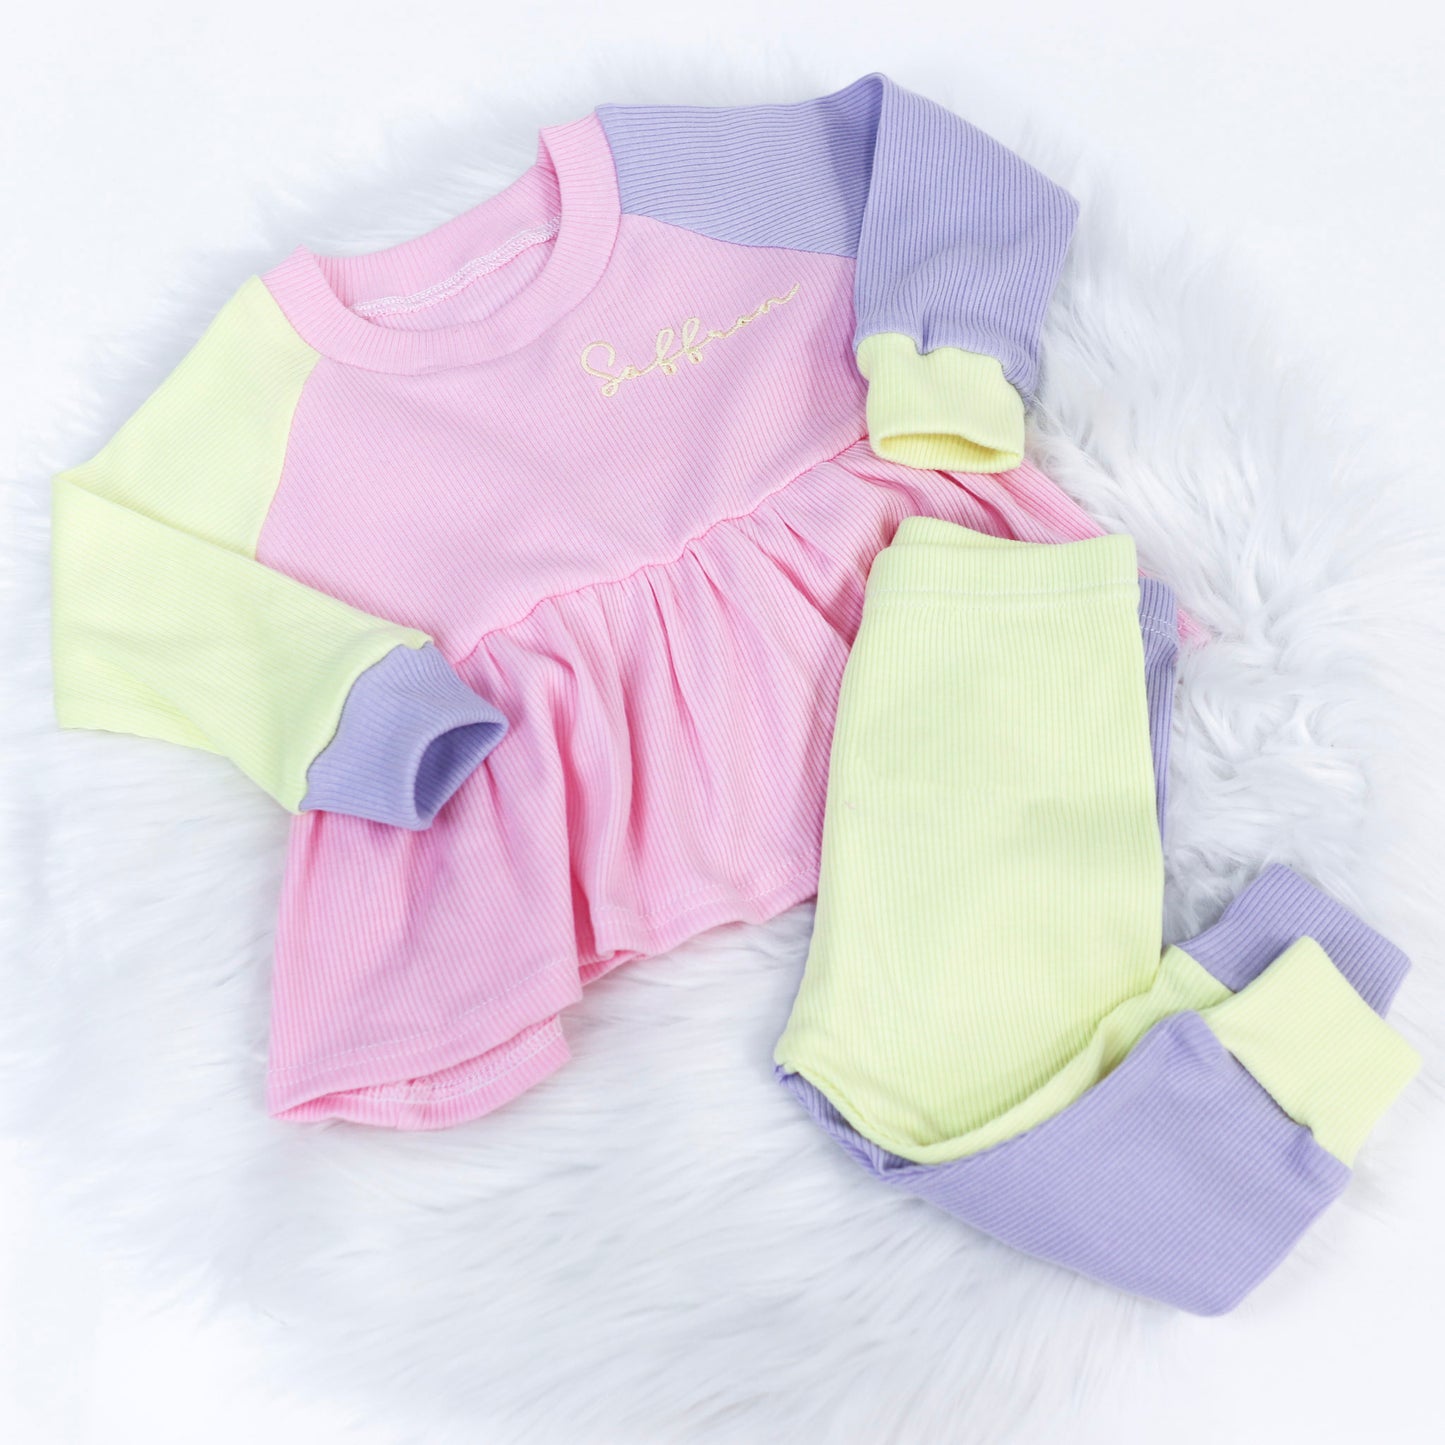 Baby Pink, Lilac & Lemon Ribbed Lounge Long Sleeve Peplum T-Shirt & Leggings Set (Made to Order)